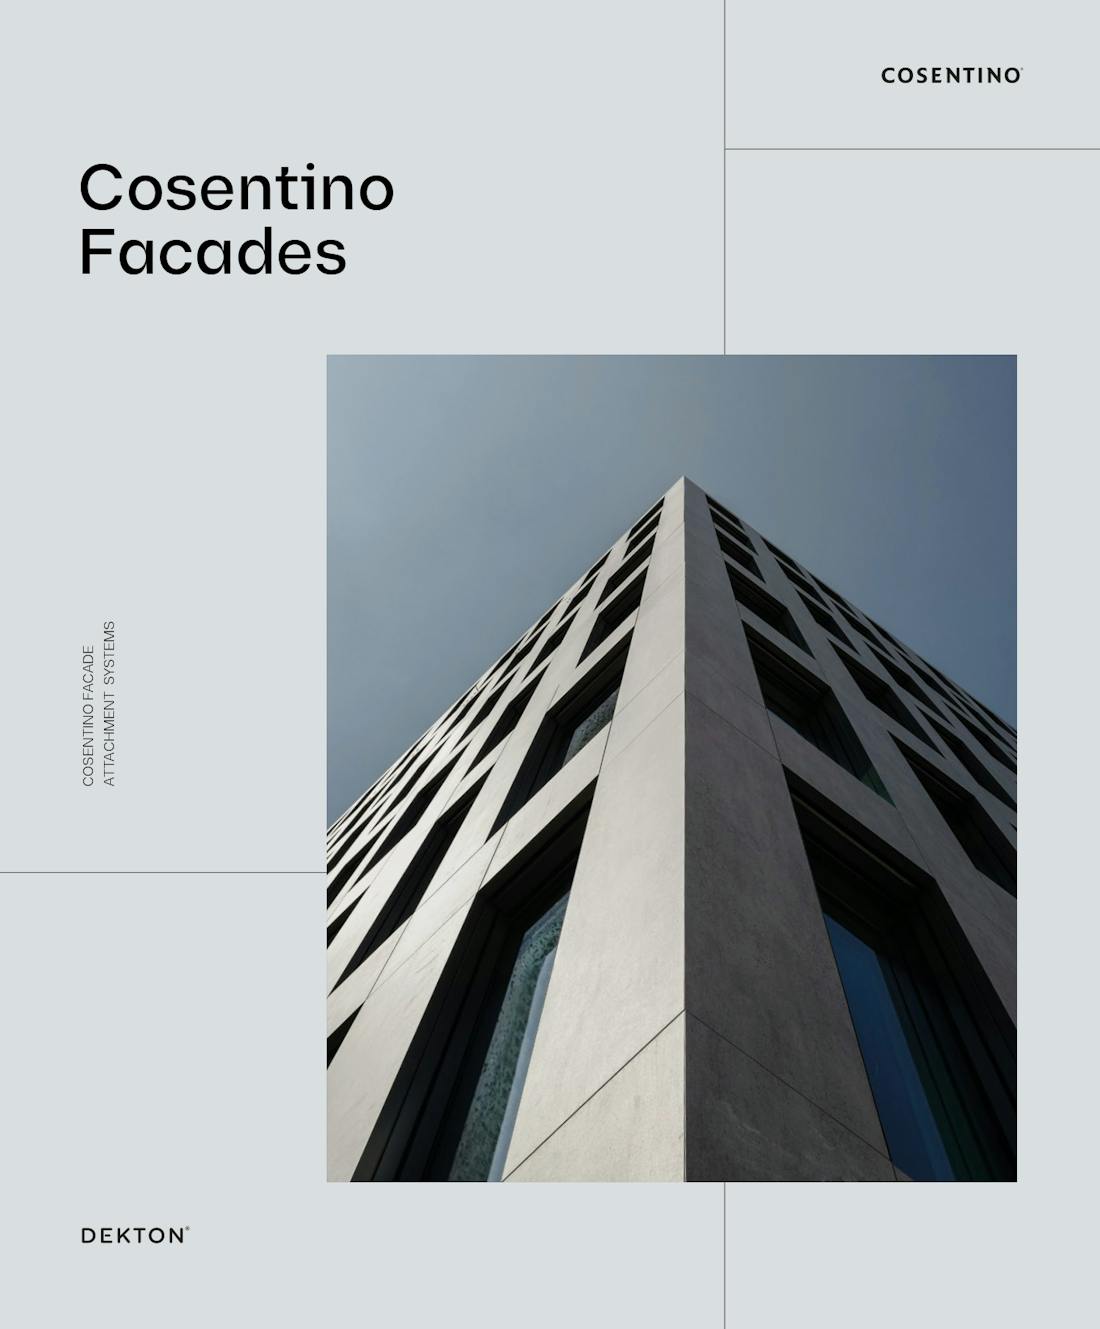 Bildnummer 56 des aktuellen Abschnitts von Excellence in ultra-compact facades von Cosentino Deutschland